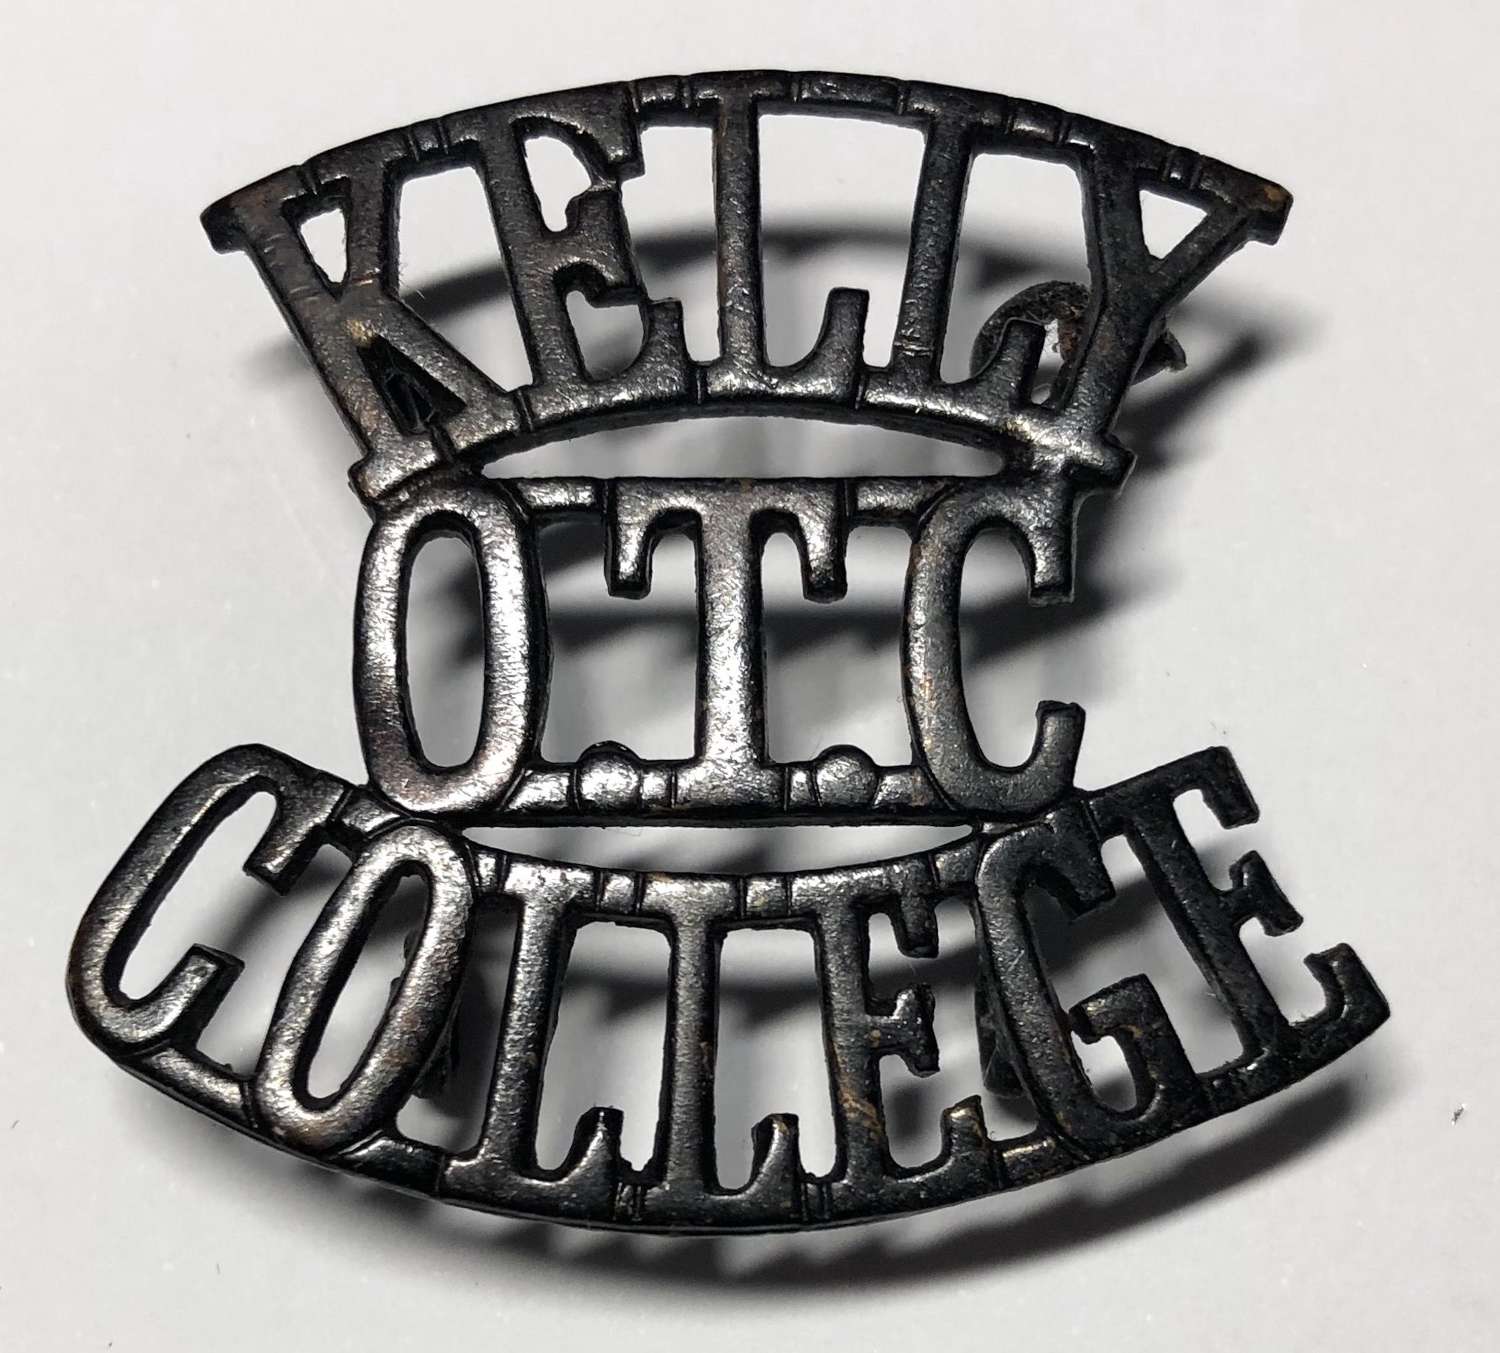 KELLY / OTC / COLLEGE shoulder title